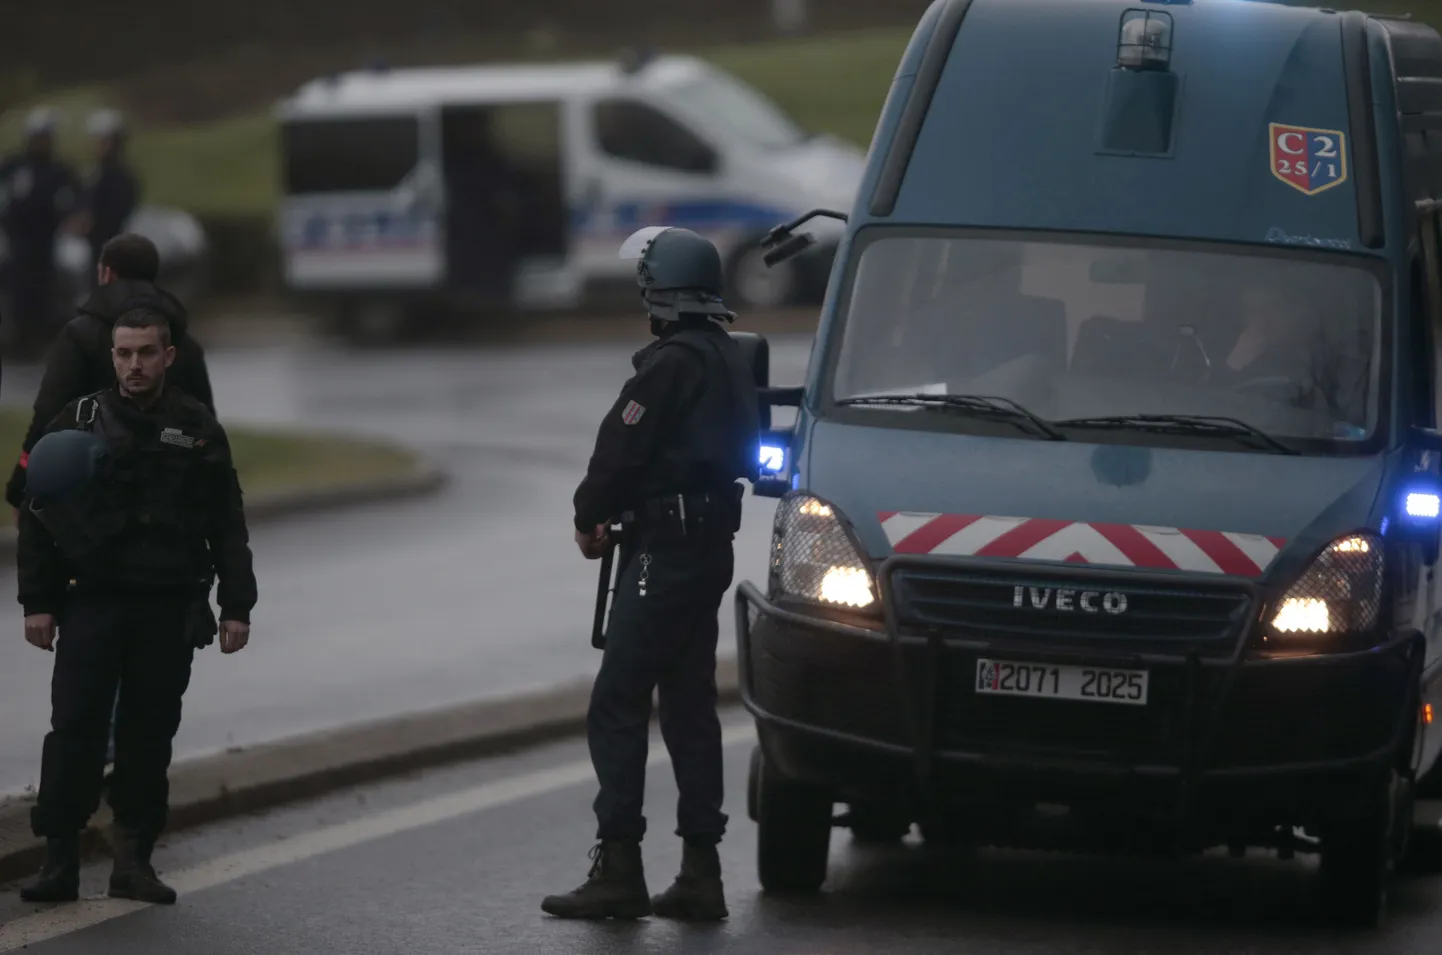 К северу от Парижа французская полиция окружила здание склада, в котором укрылись участники нападения на редакцию журнала Charlie Hebdo в Париже, застрелившие 12 человек.